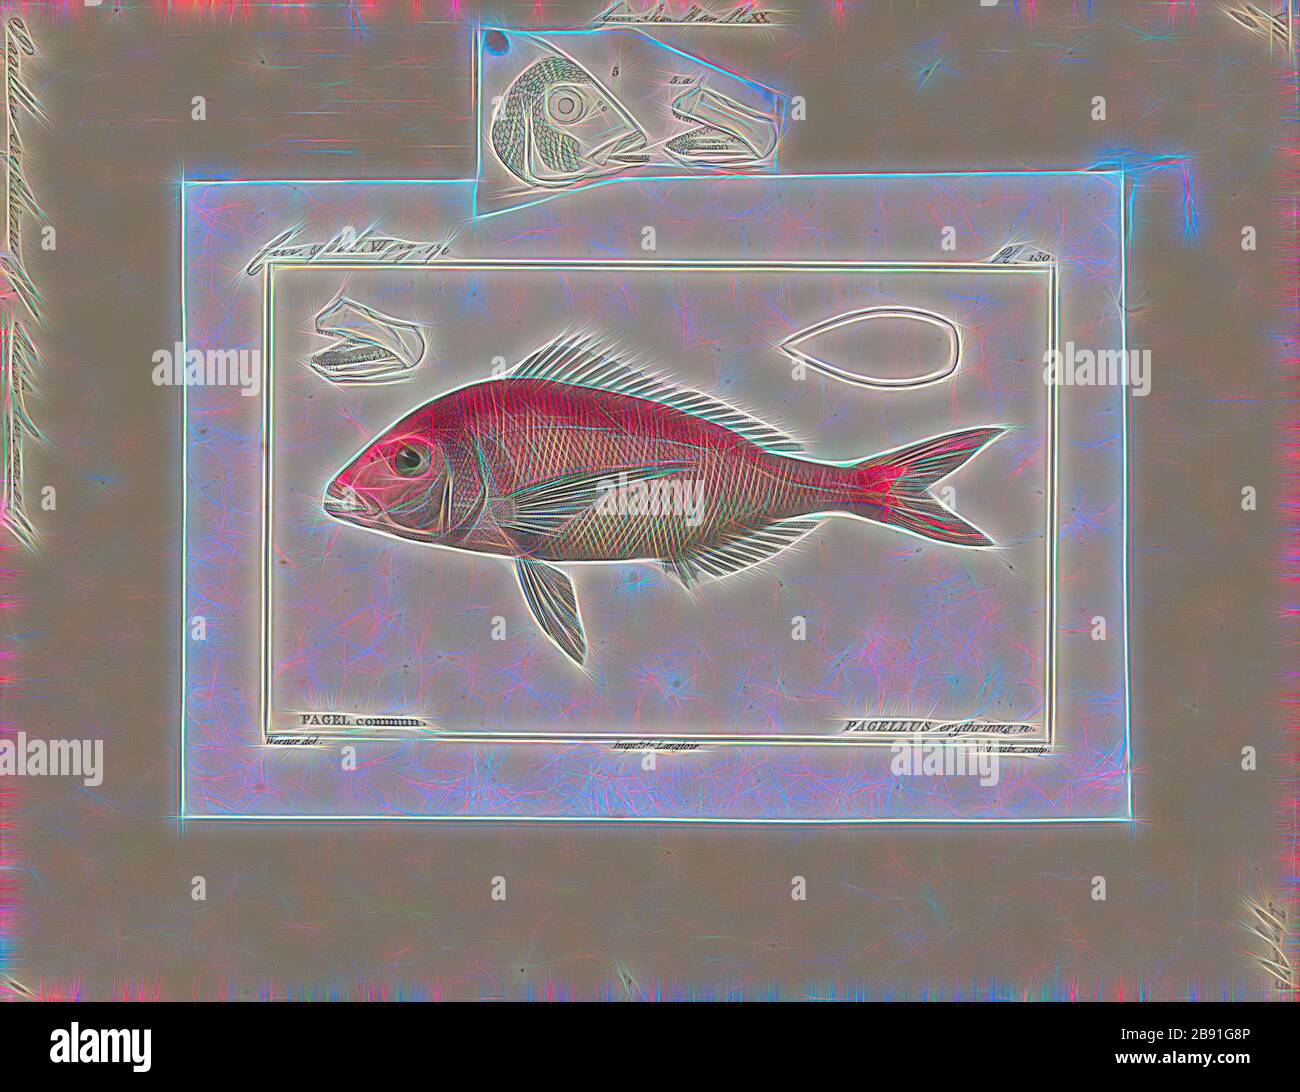 Pagellus erythrinus, Print, la commune de pandora (Pagellus erythrinus) est un poisson de la famille des Sillidae (bam de mer). C'est un poisson alimentaire populaire dans les pays méditerranéens, avec une chair blanche délicate., 1700-1880, réinventé par Gibon, design de gai gai chaleureux de luminosité et de rayons de lumière radiance. L'art classique réinventé avec une touche moderne. La photographie inspirée du futurisme, qui embrasse l'énergie dynamique de la technologie moderne, du mouvement, de la vitesse et révolutionne la culture. Banque D'Images